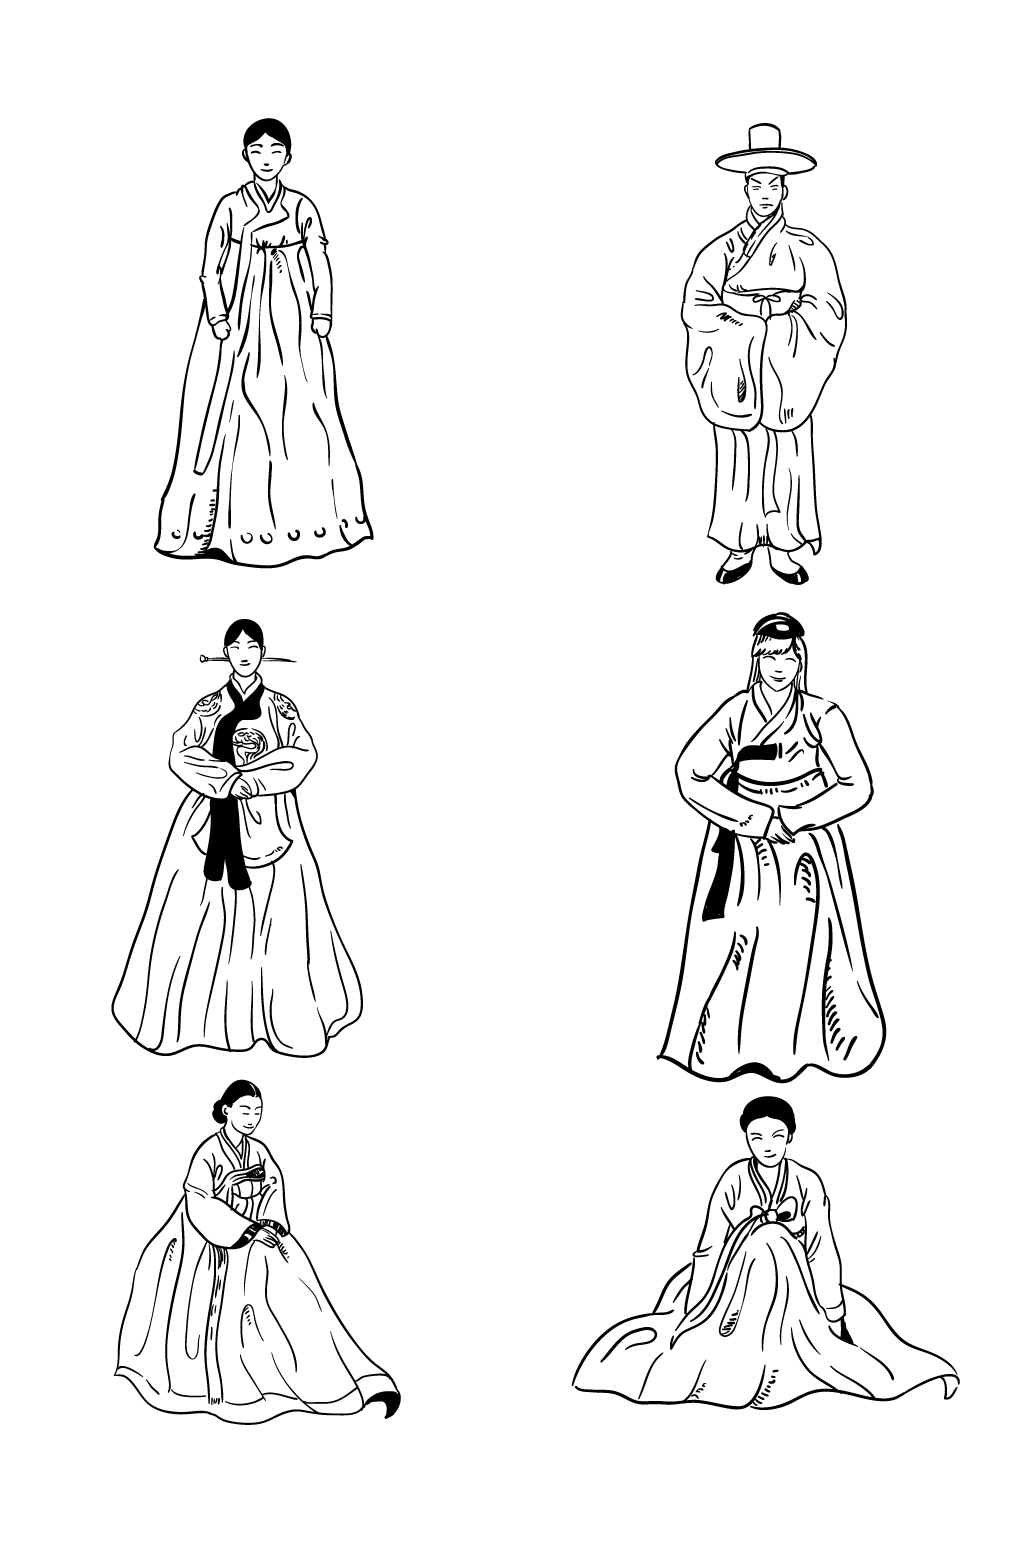 朝鲜族服饰简笔画 男图片